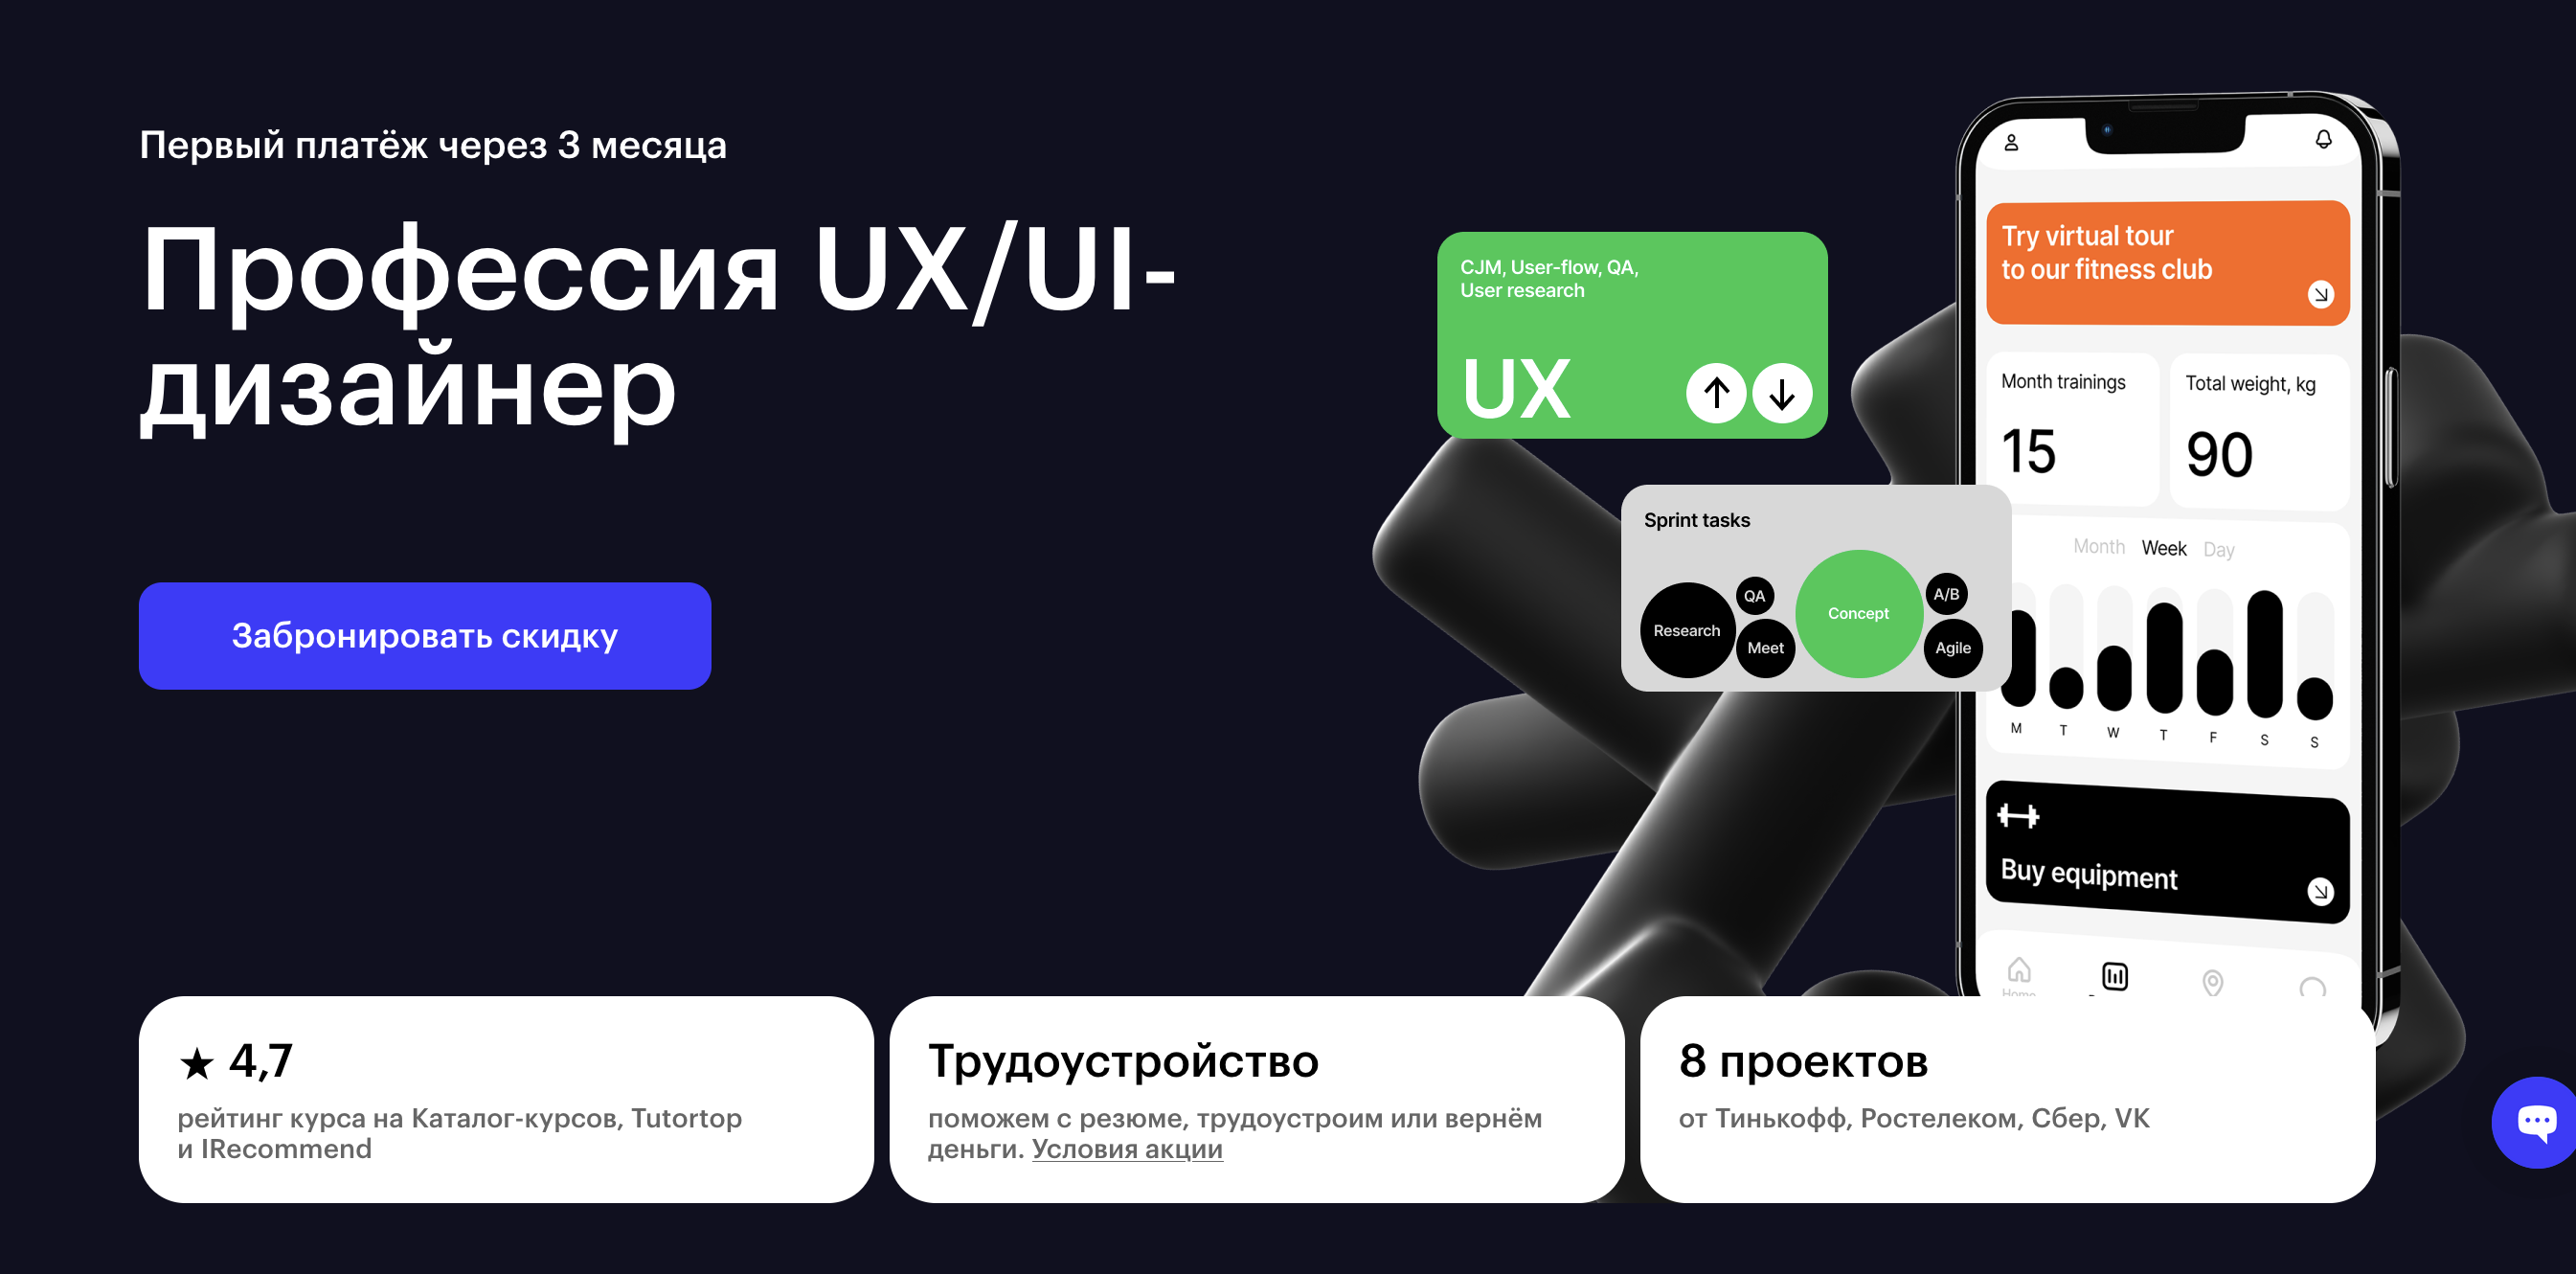 Skillbox: Профессия UX/UI-дизайнер